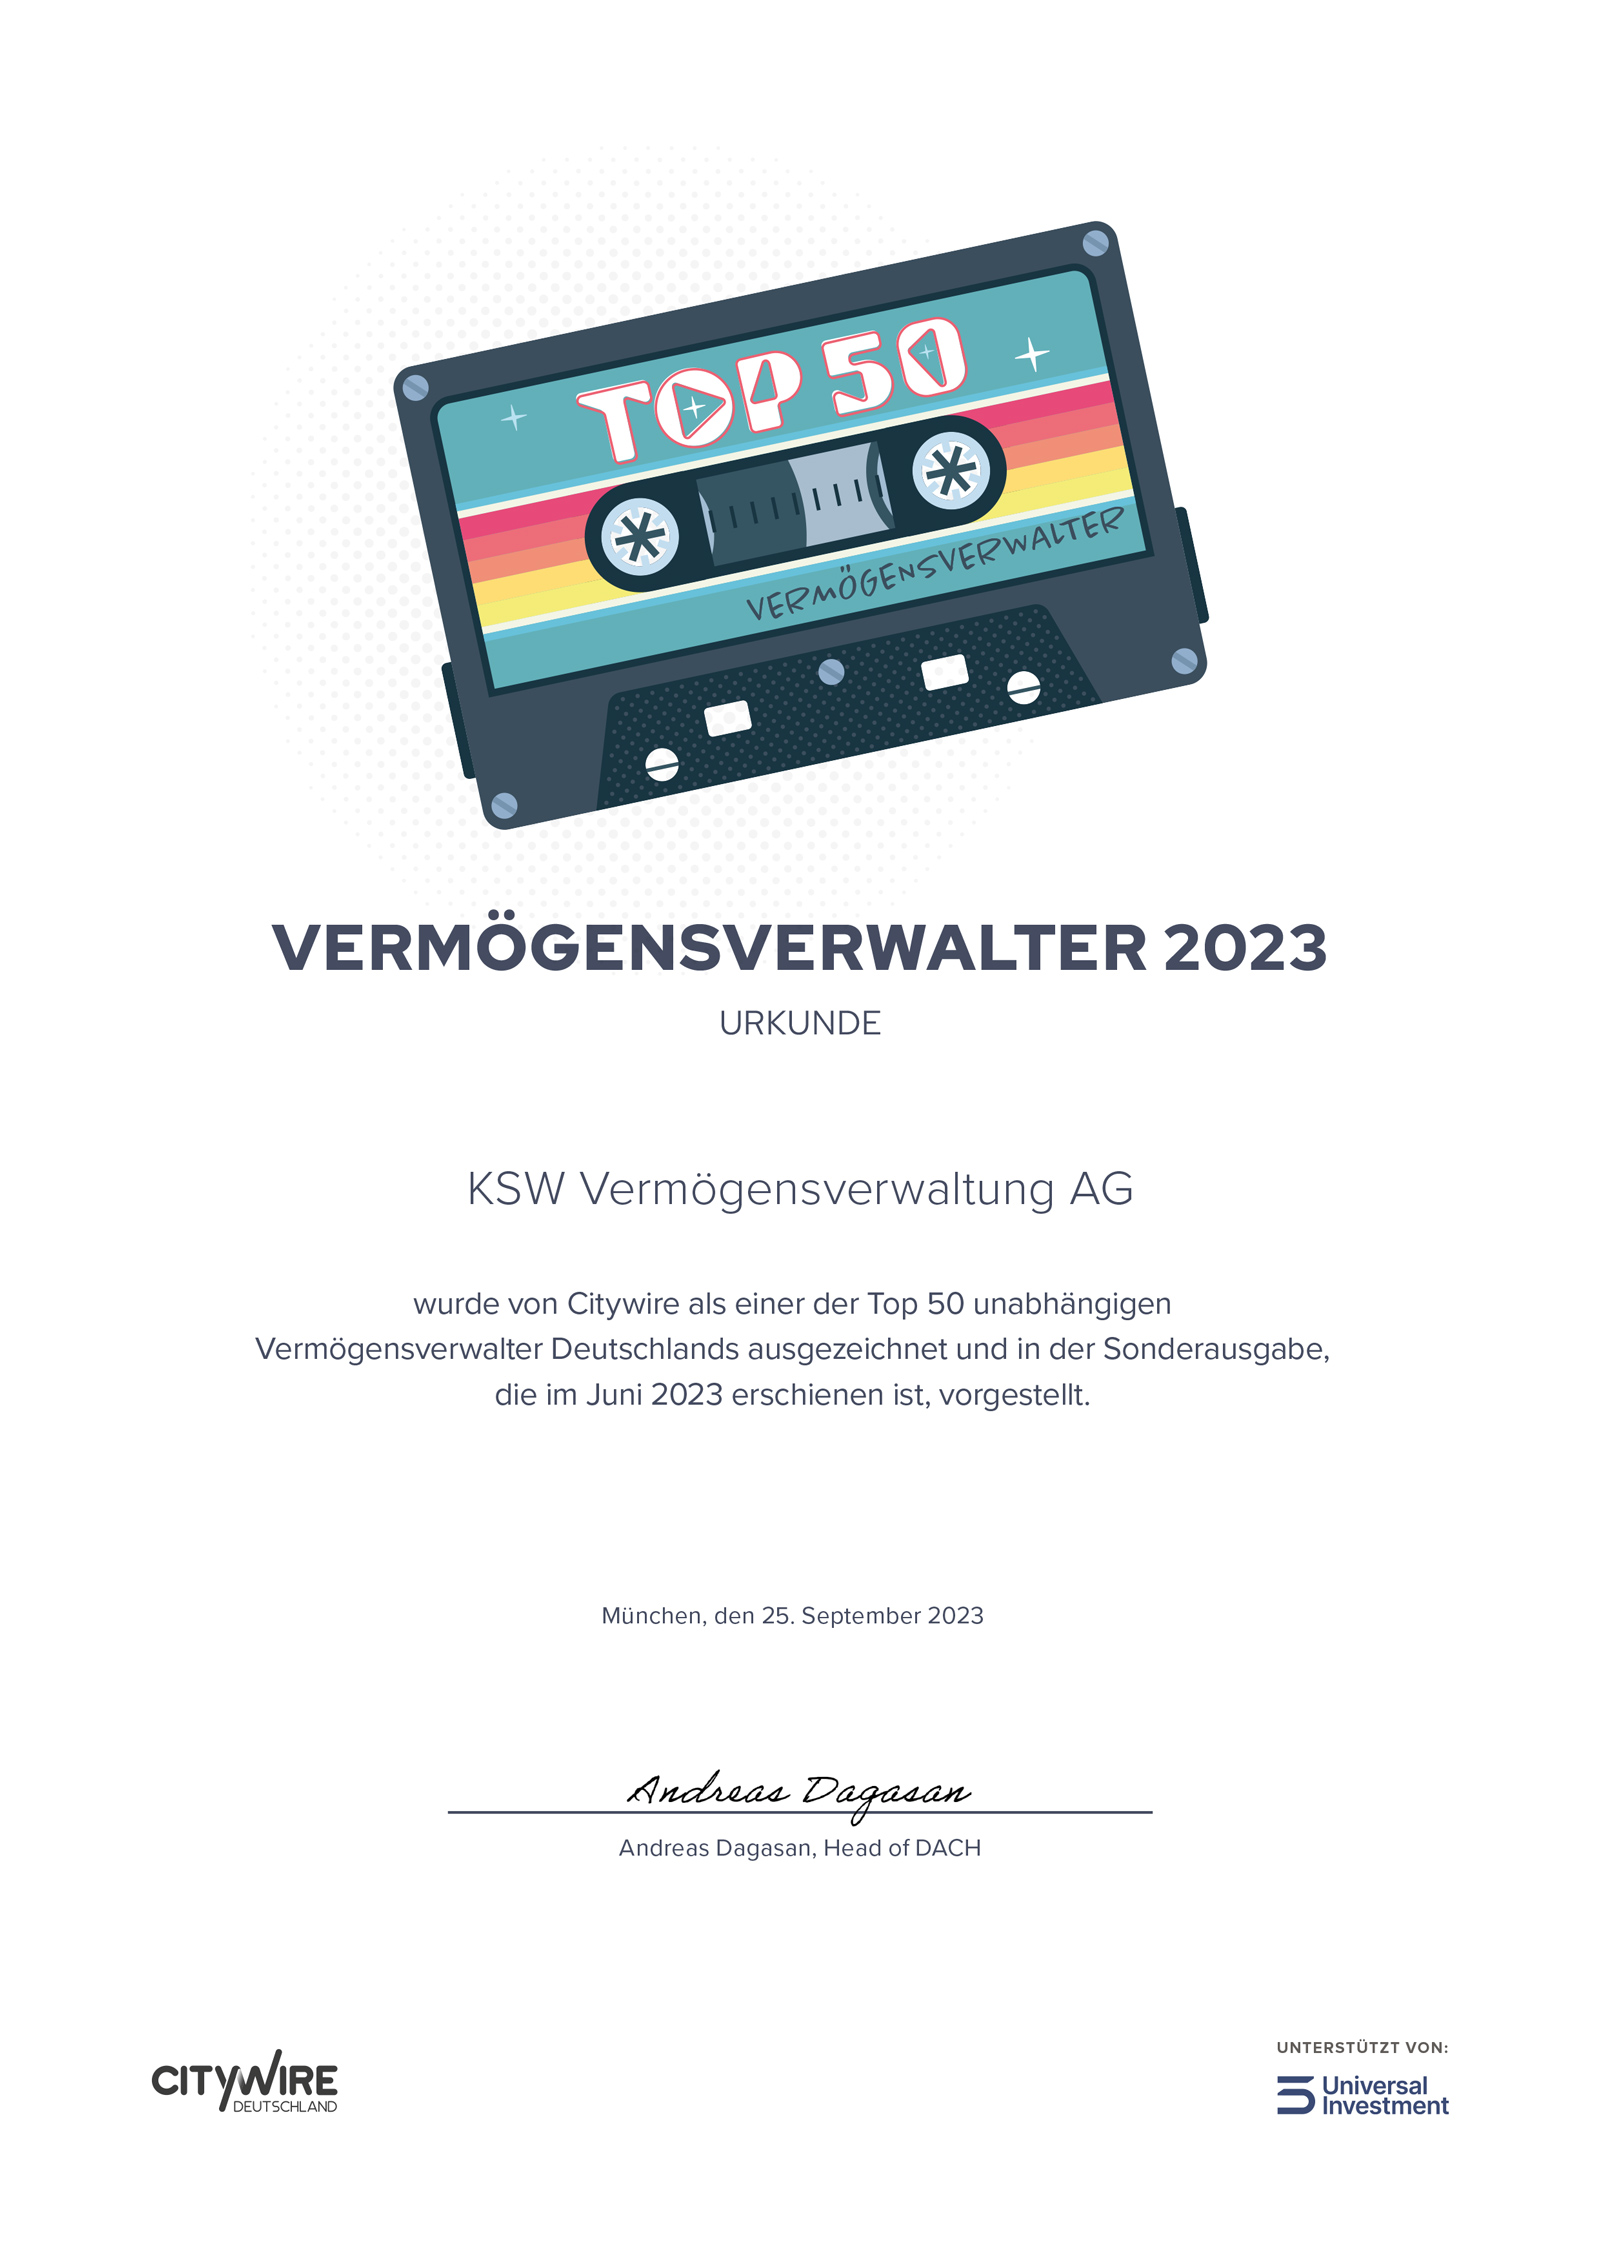 Top 50 Vermögensverwalter in Deutschland 2023 Auszeichnung für die KSW Vermögensverwaltung